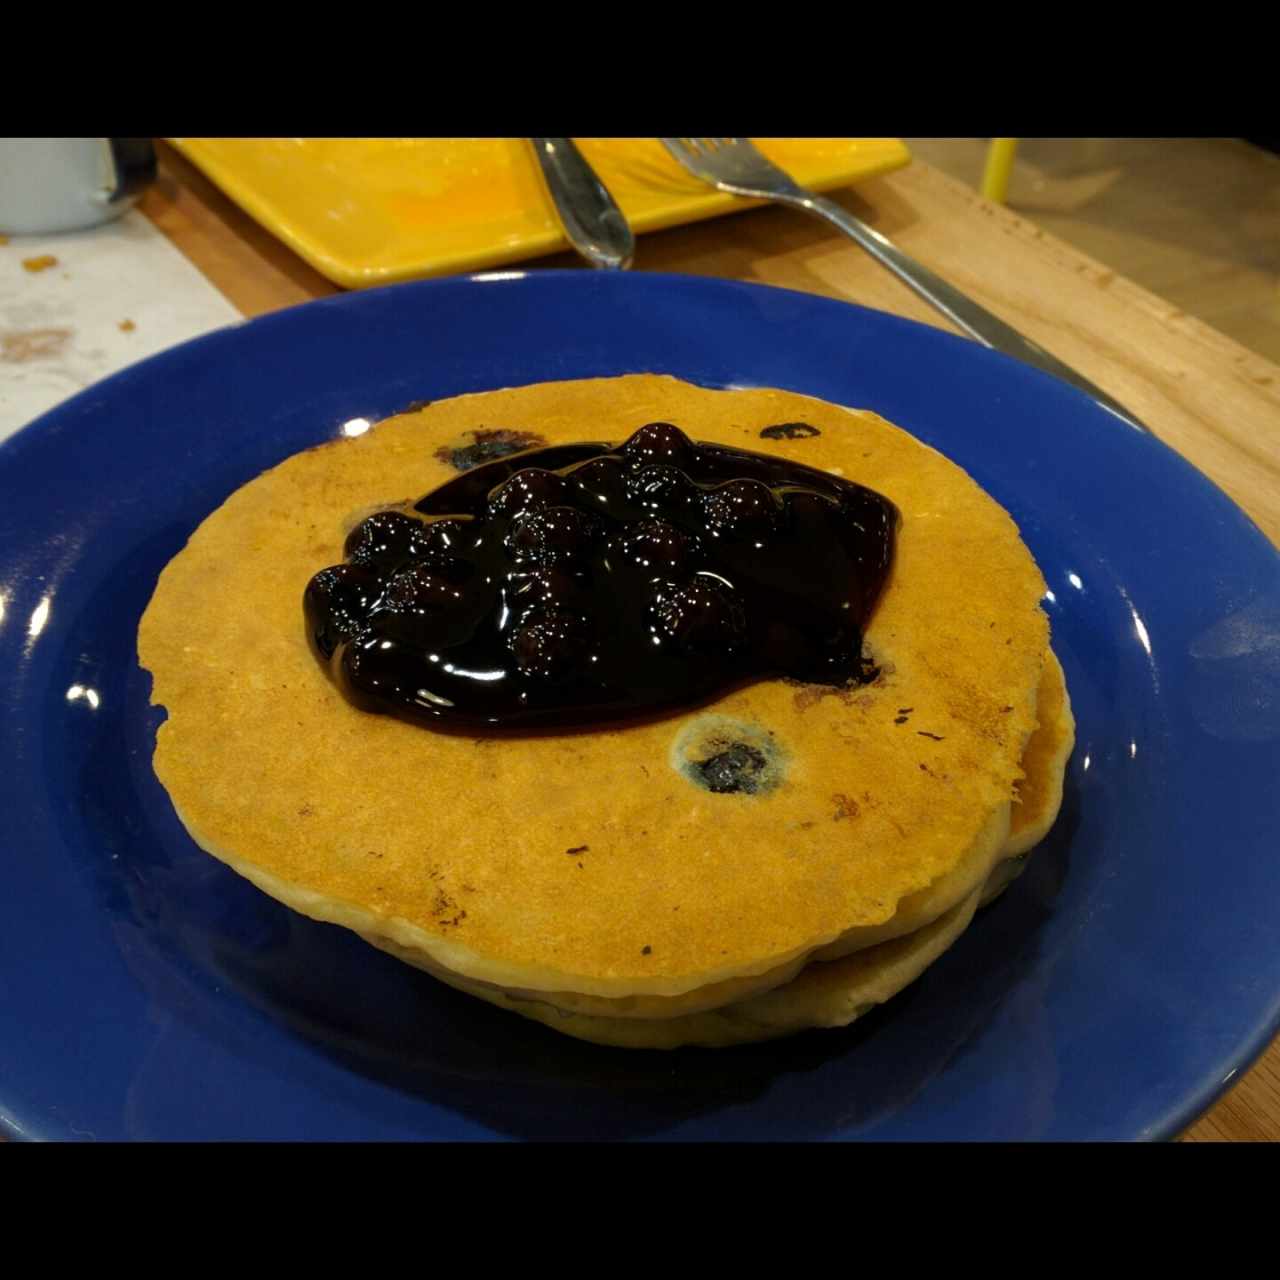 blueberry pancakes con huellas de dedos en el plato